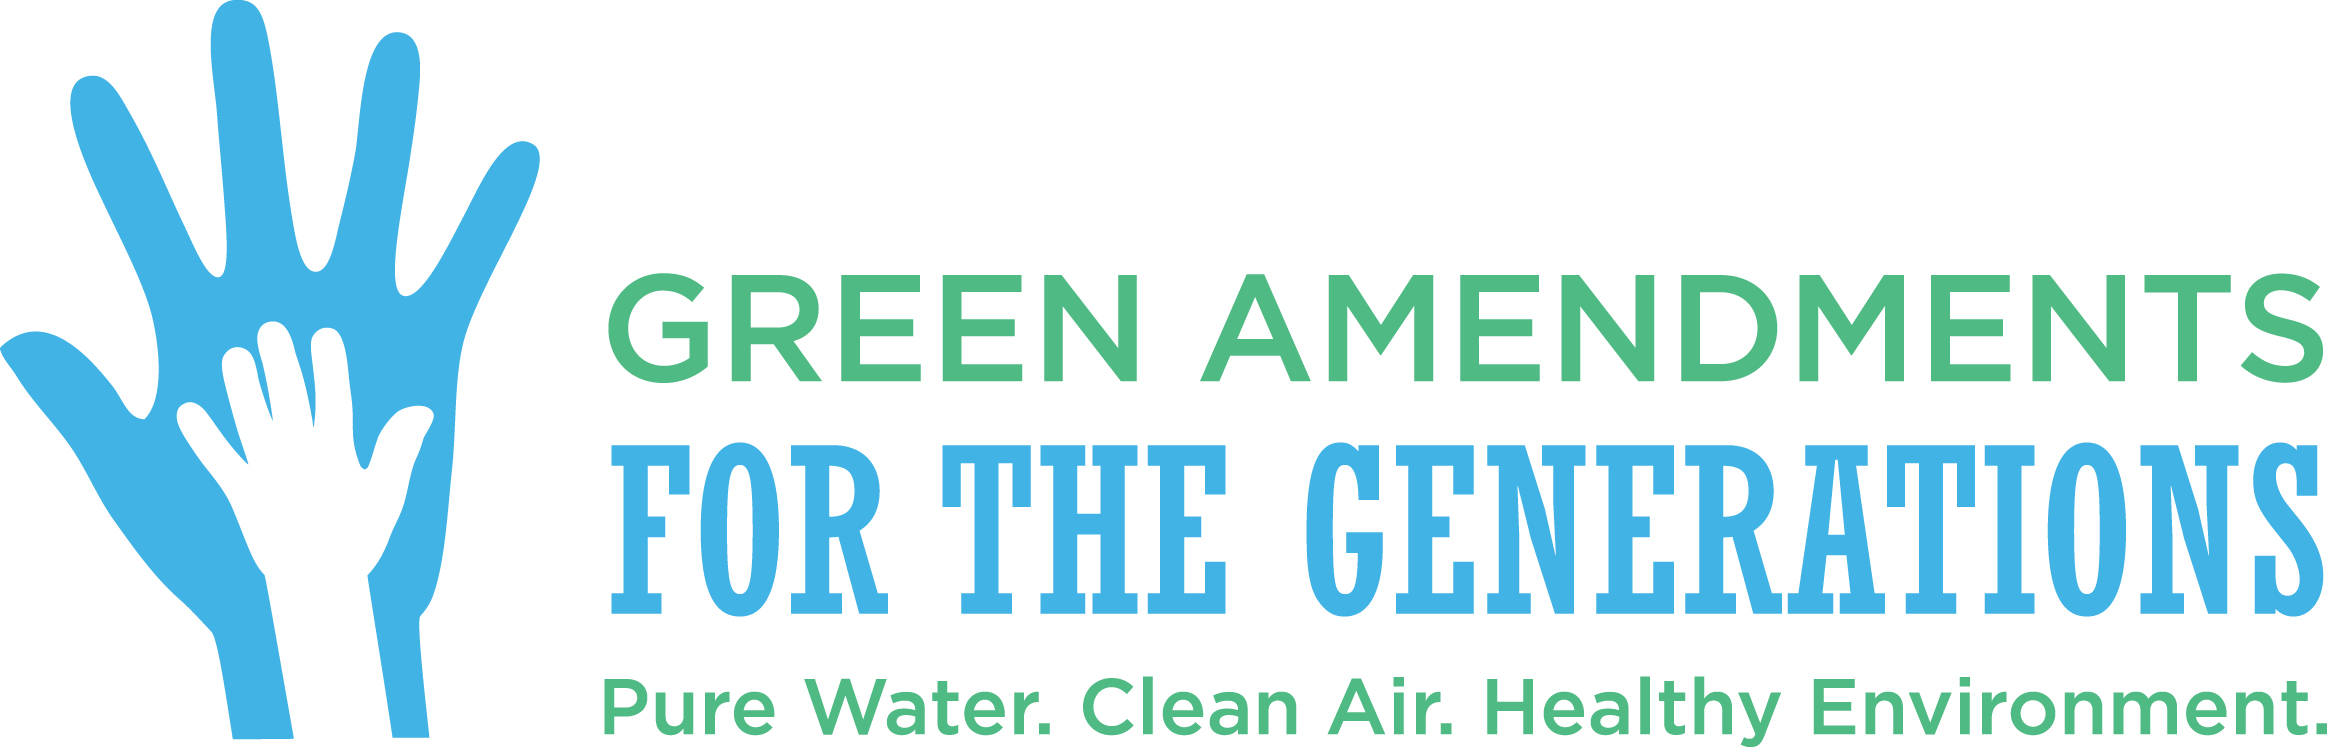 Green Amendments For the Generations